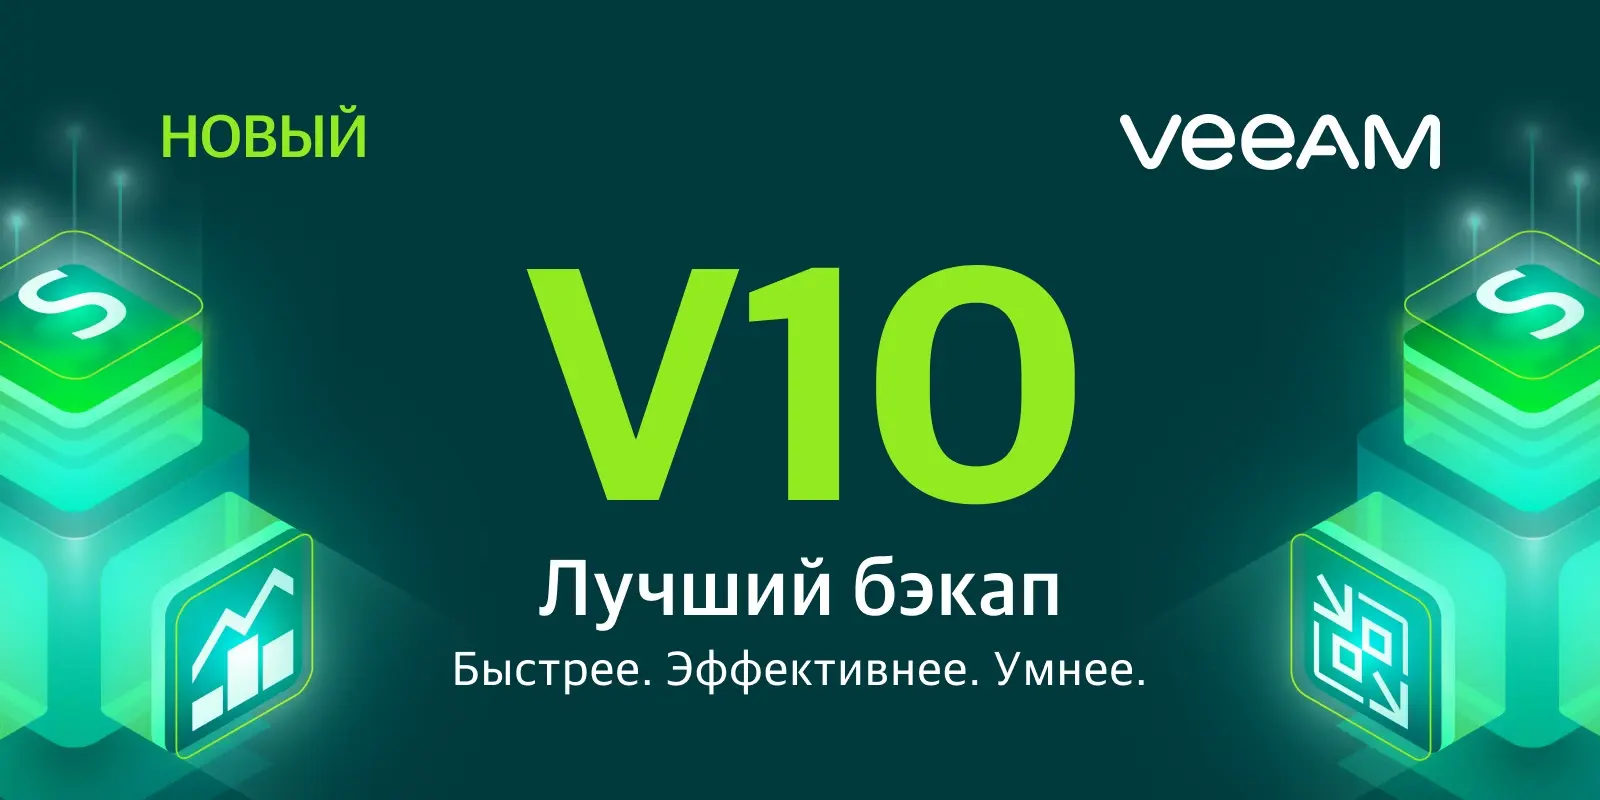 Veeam  представил новую версию решения для резервного копирования Veeam Availability Suite v10